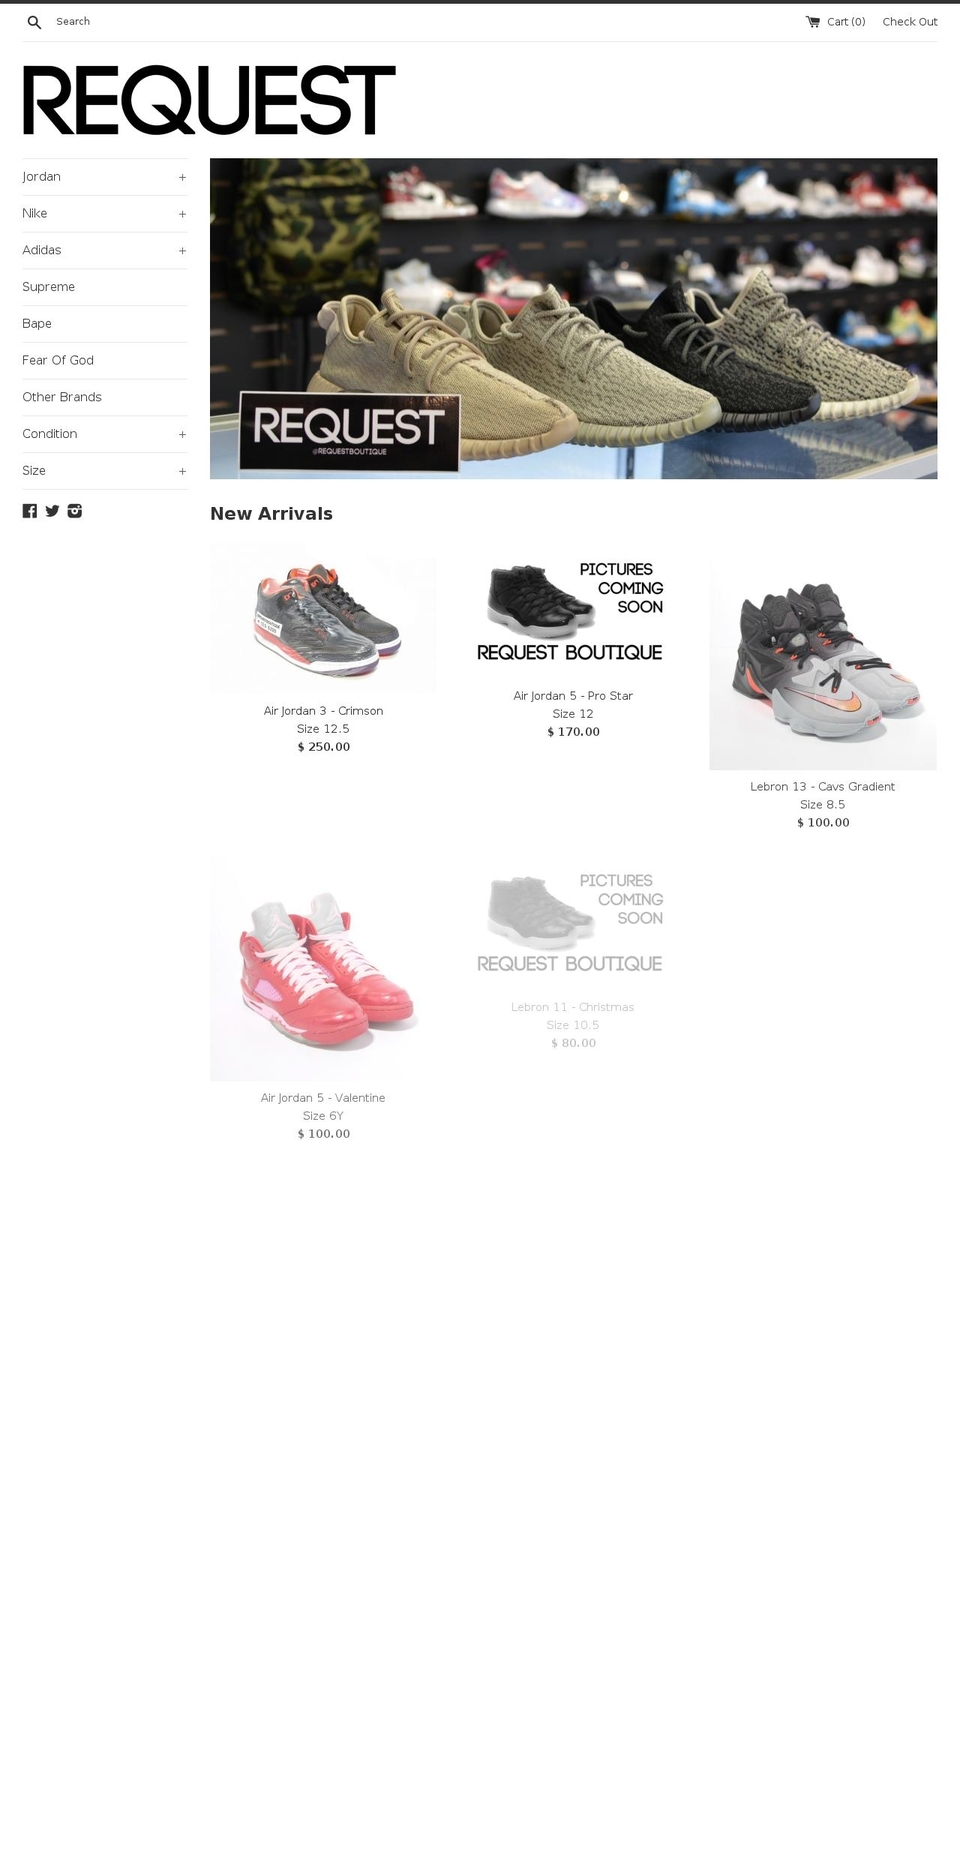 requestboutique.com shopify website screenshot